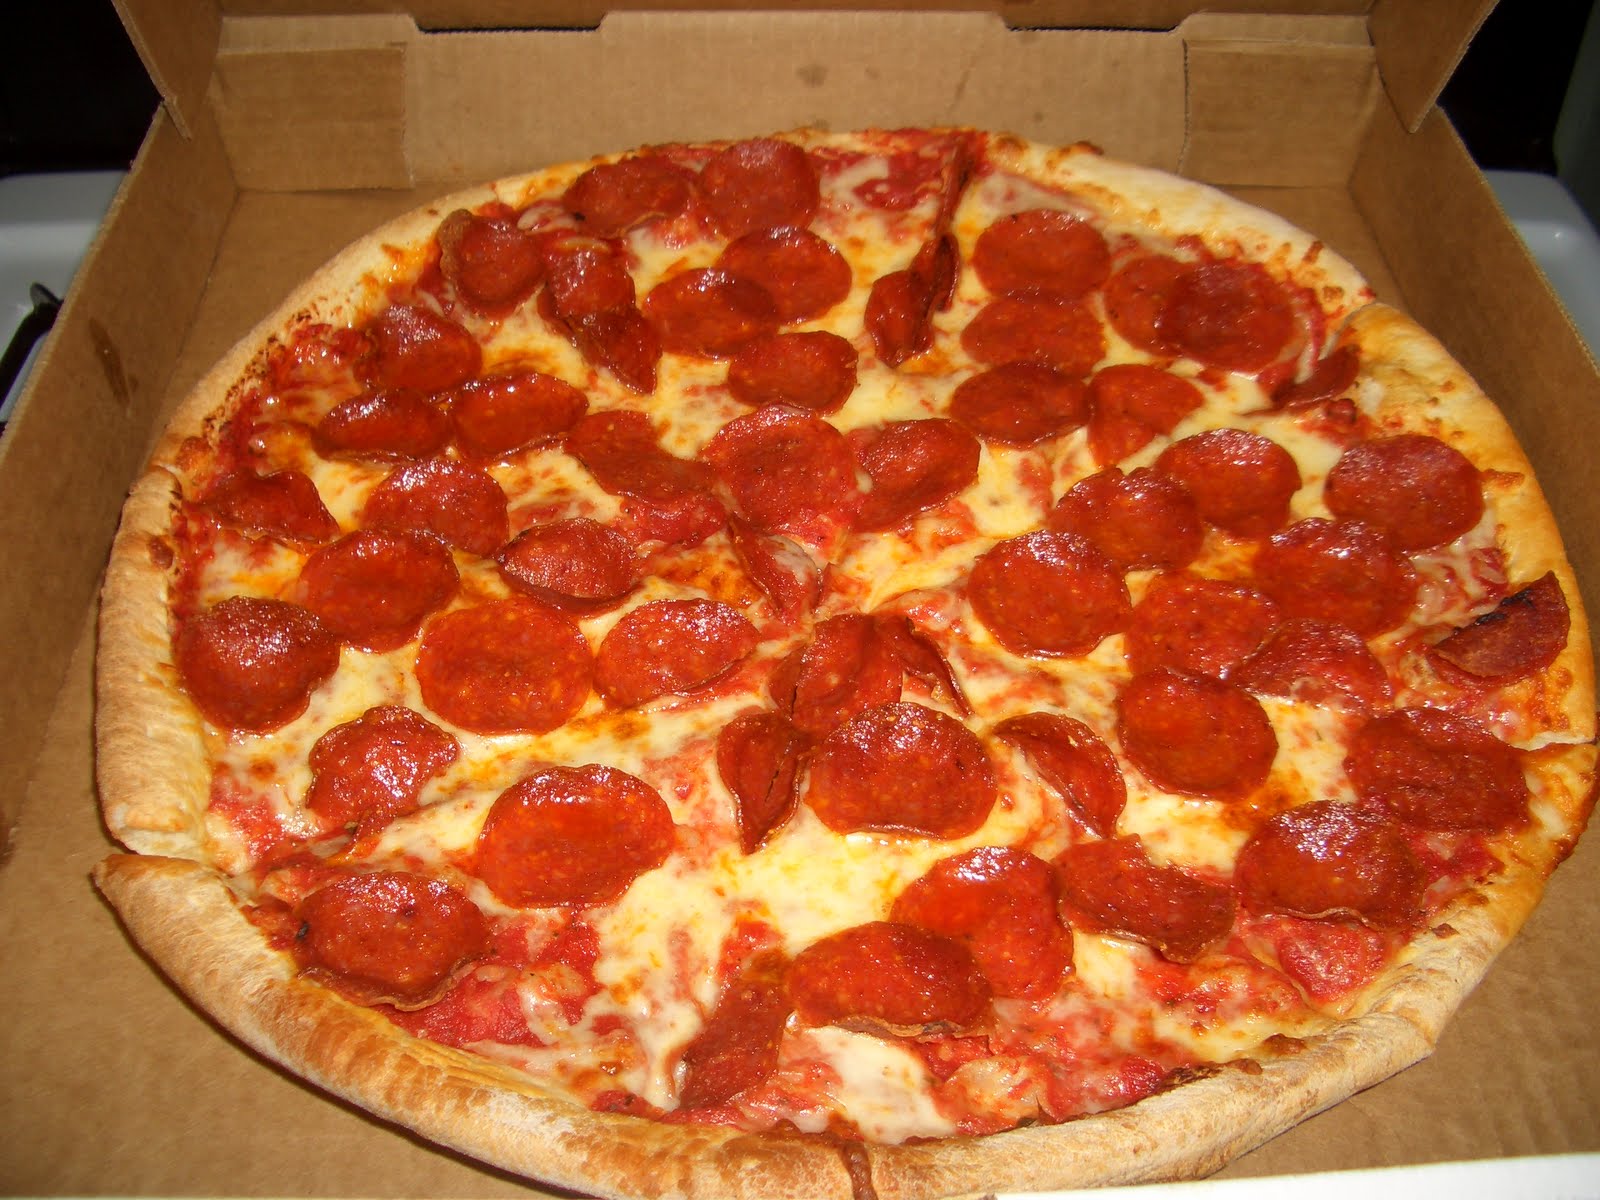 состав пиццы пепперони в додо фото 53